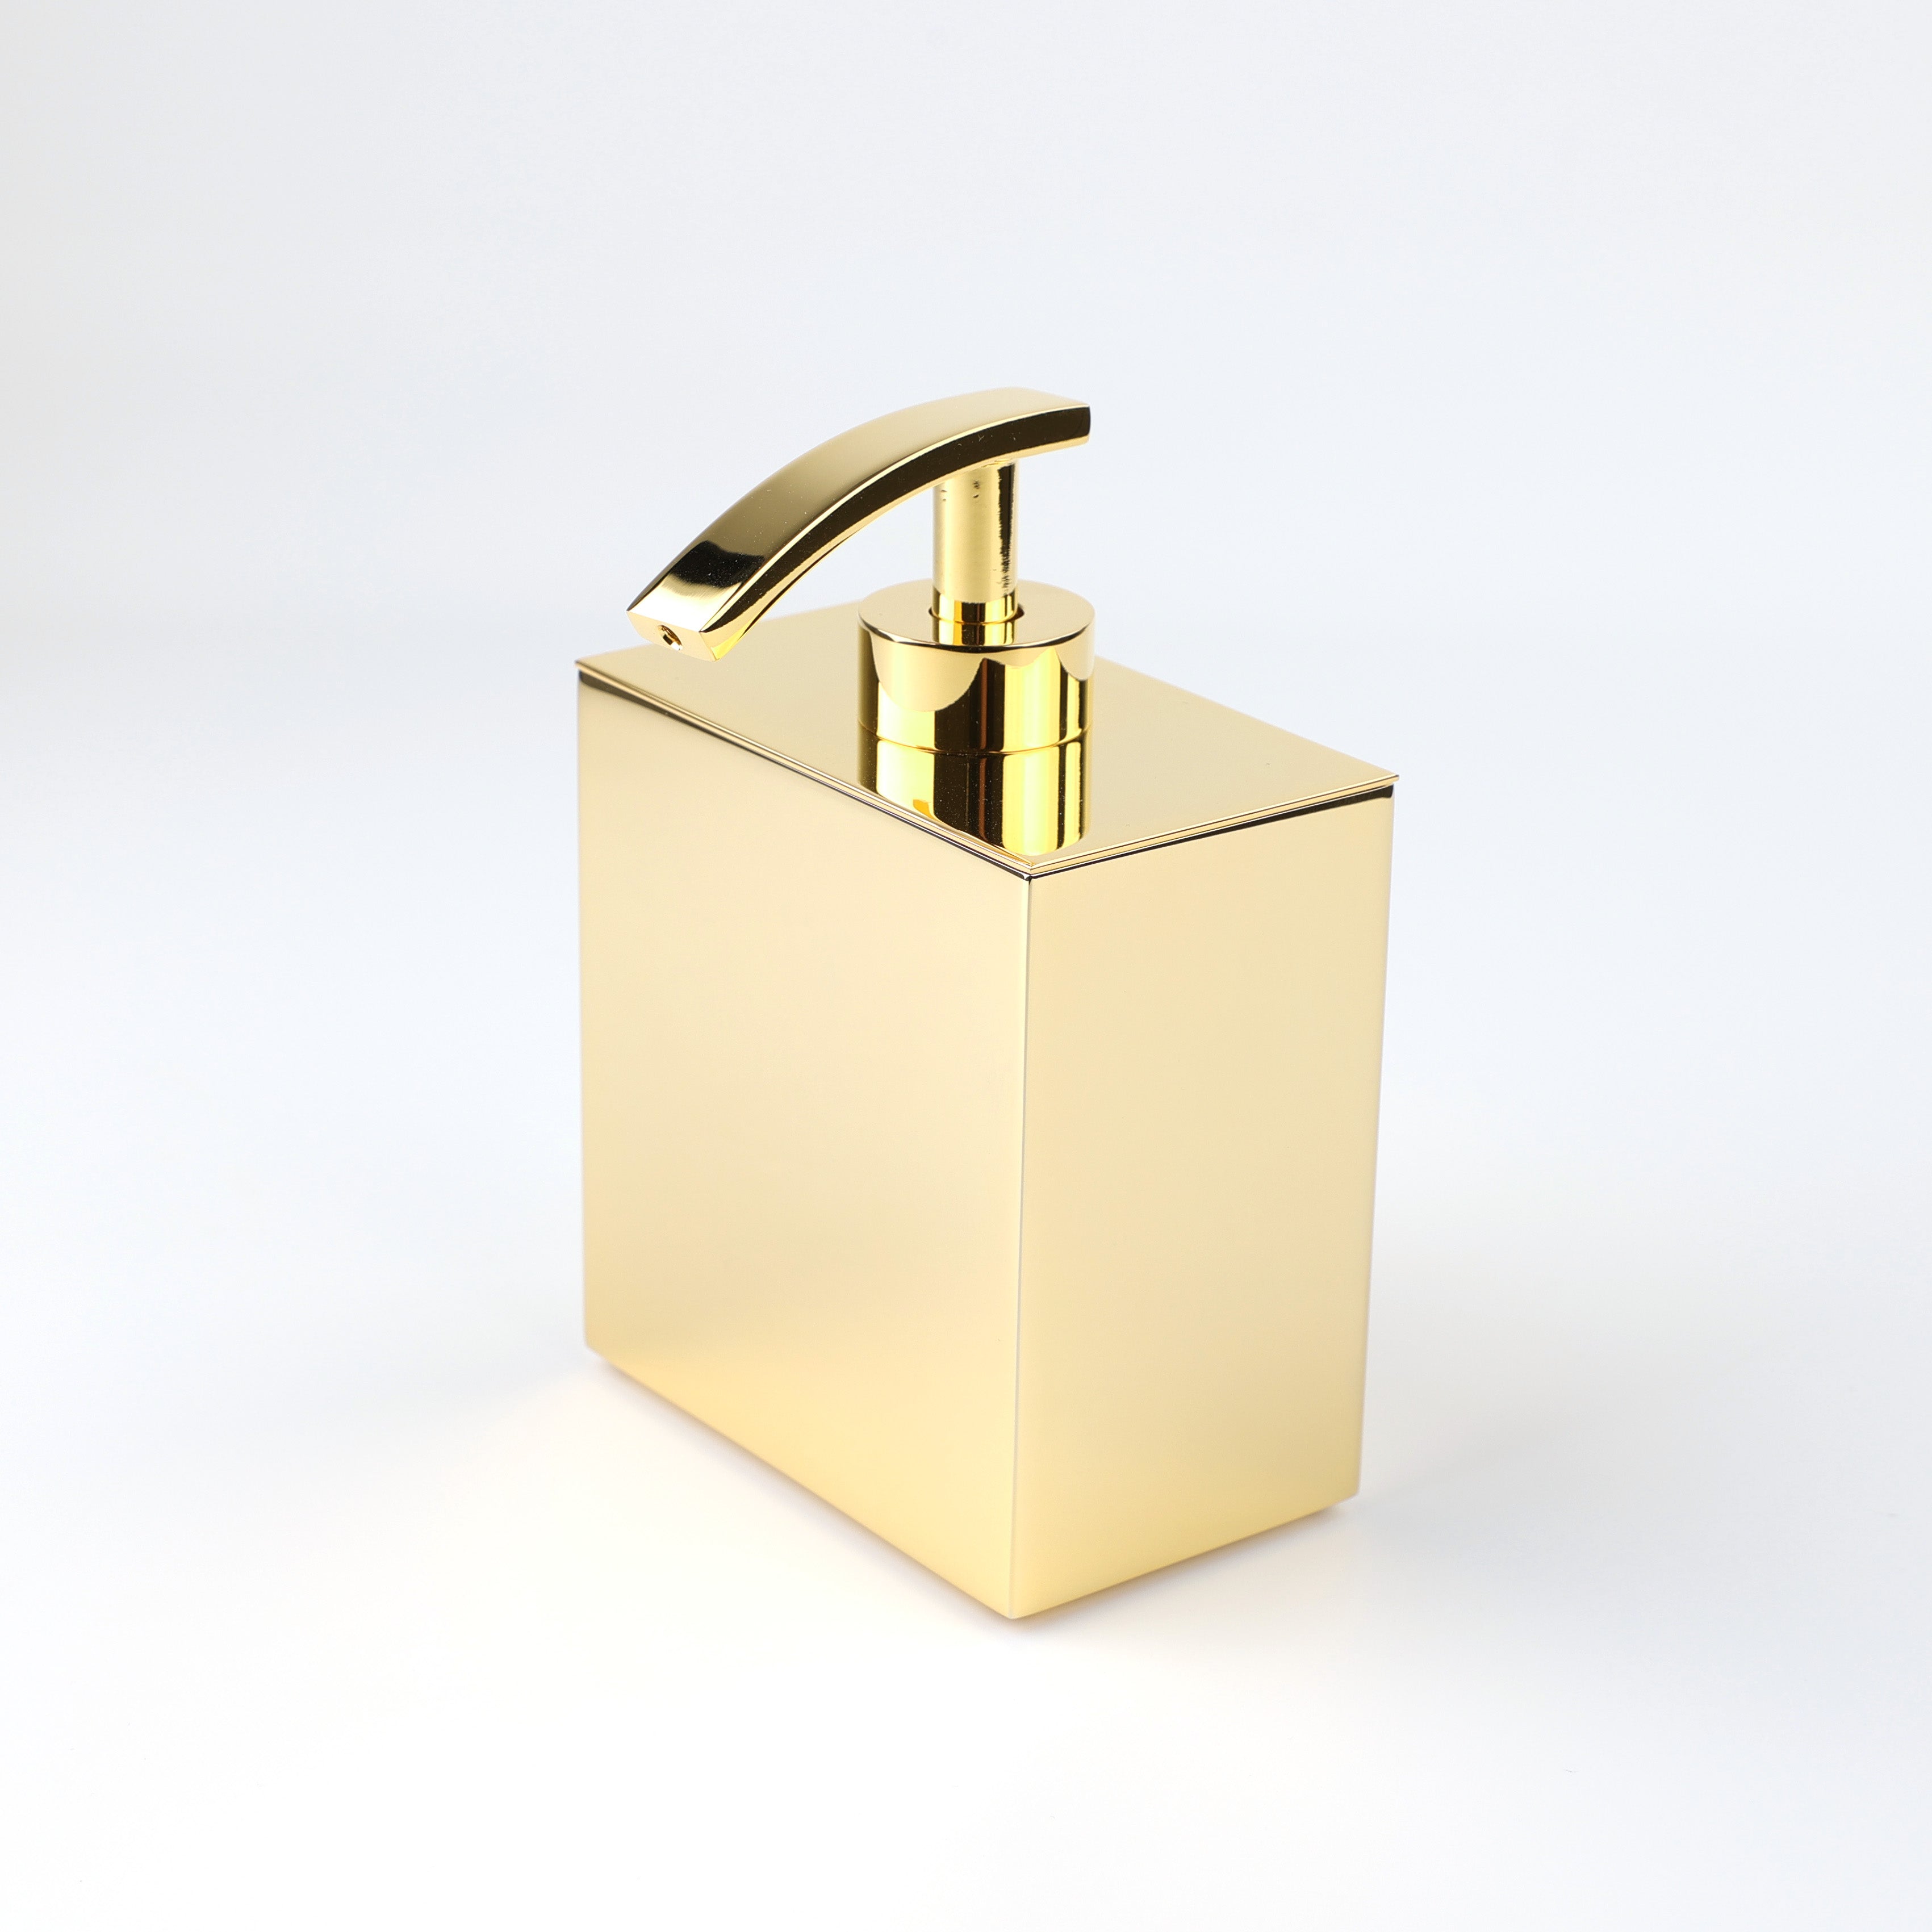 Hochwertiger Windisch 90101 O Seifenspender in 24-Karat-Gold-Optik, modernes und luxuriöses Design, ideal für elegante Badezimmer und Gäste-WCs.